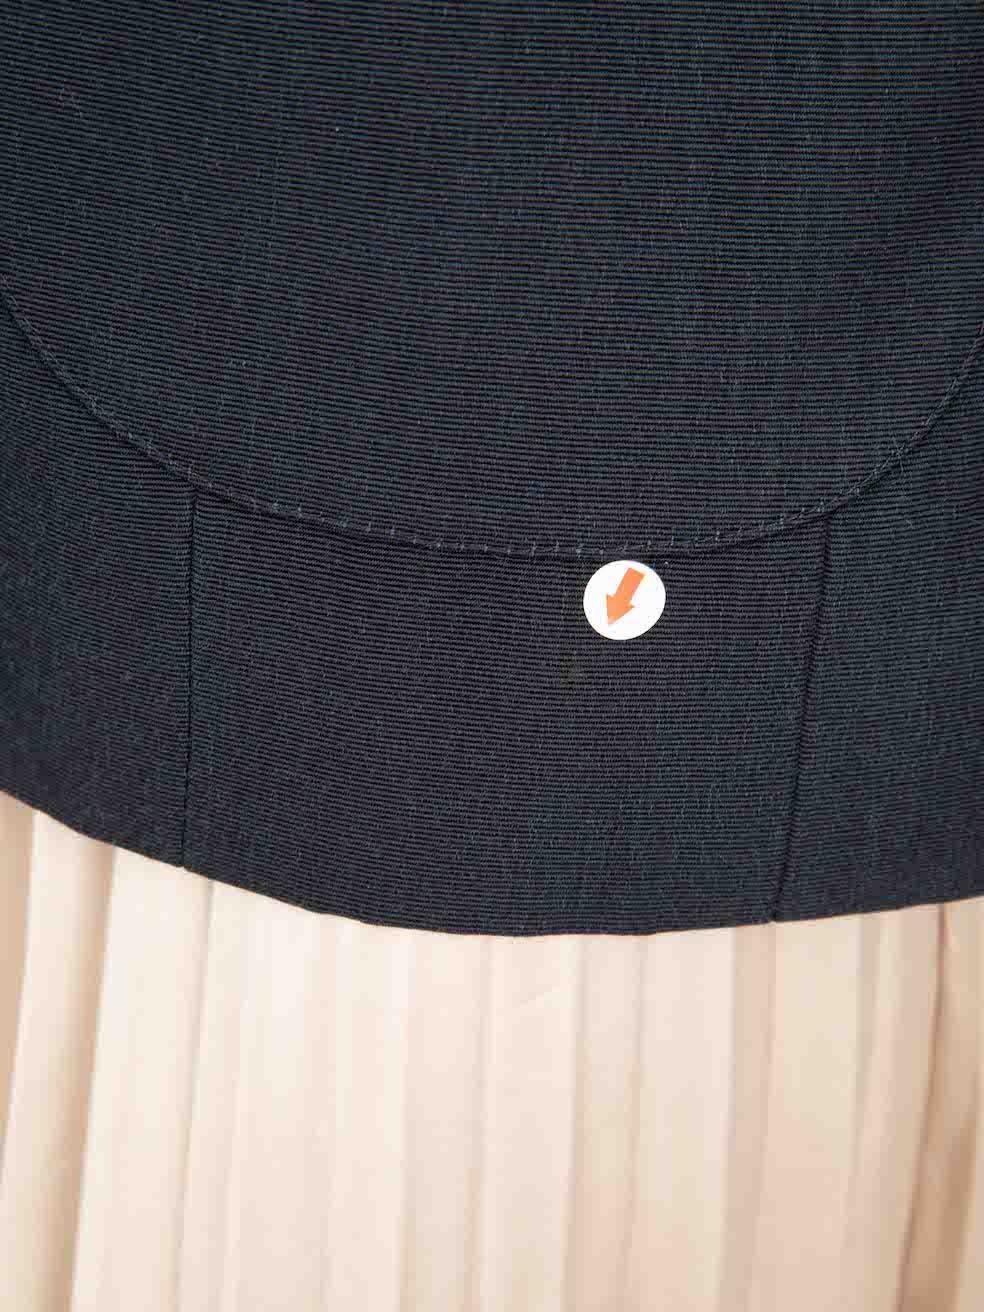 Saint Laurent Vintage Navy Embellished Button Jacket Size XXL For Sale 2